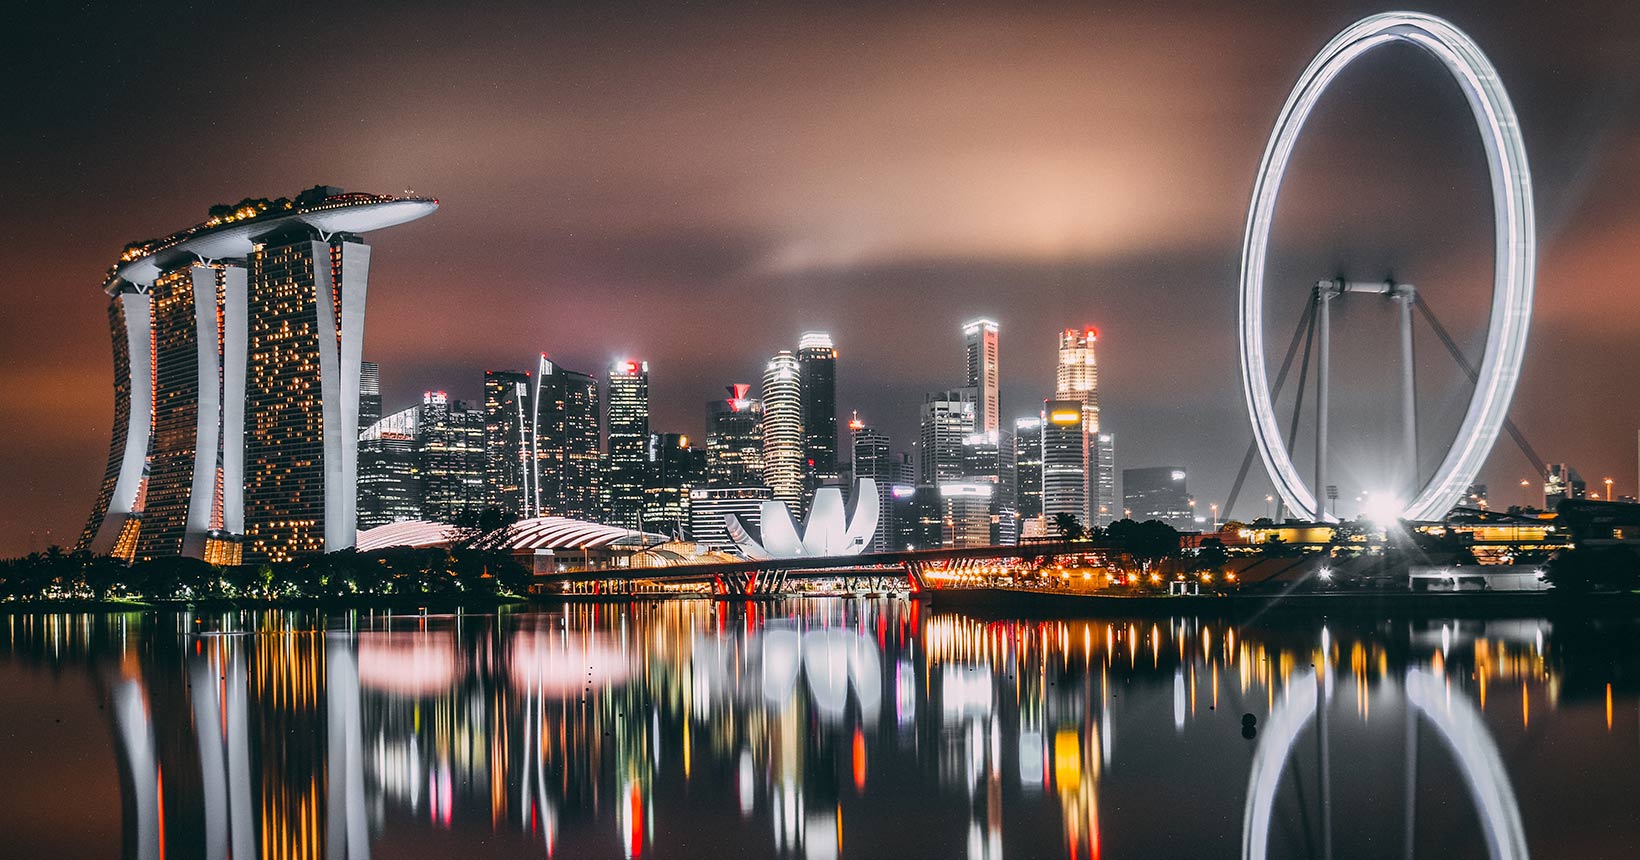 Singapura - eleita uma das melhores cidades para visitar